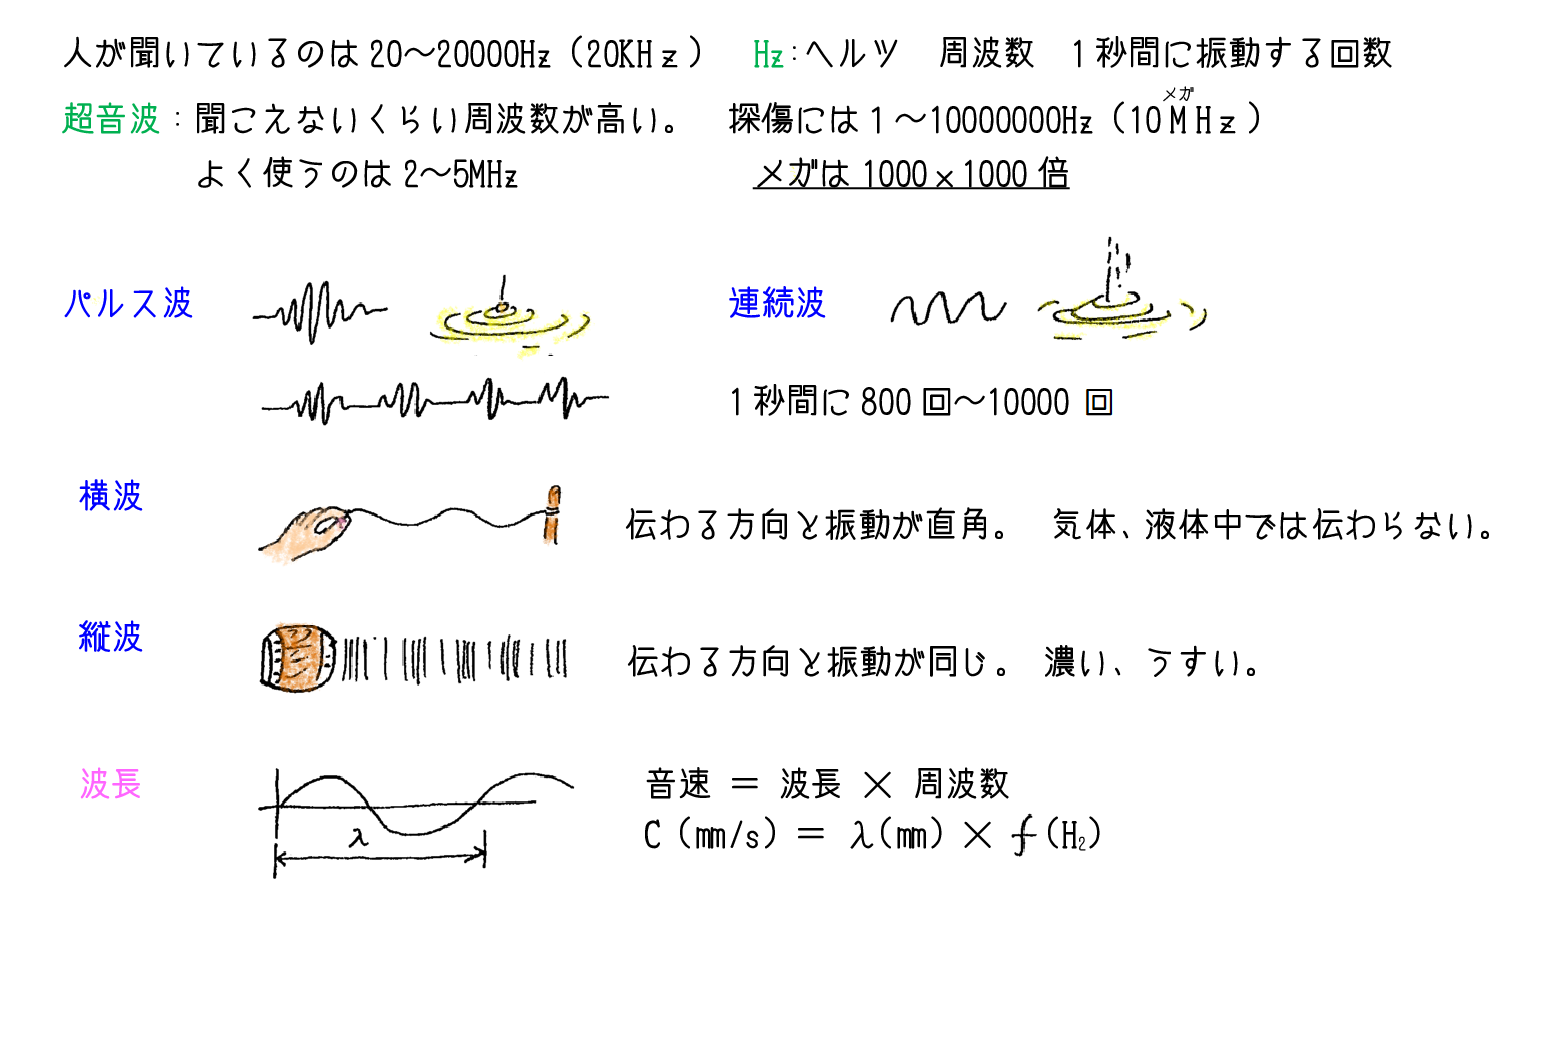 超音波と探傷装置の構成 奈須先生のイラスト解説